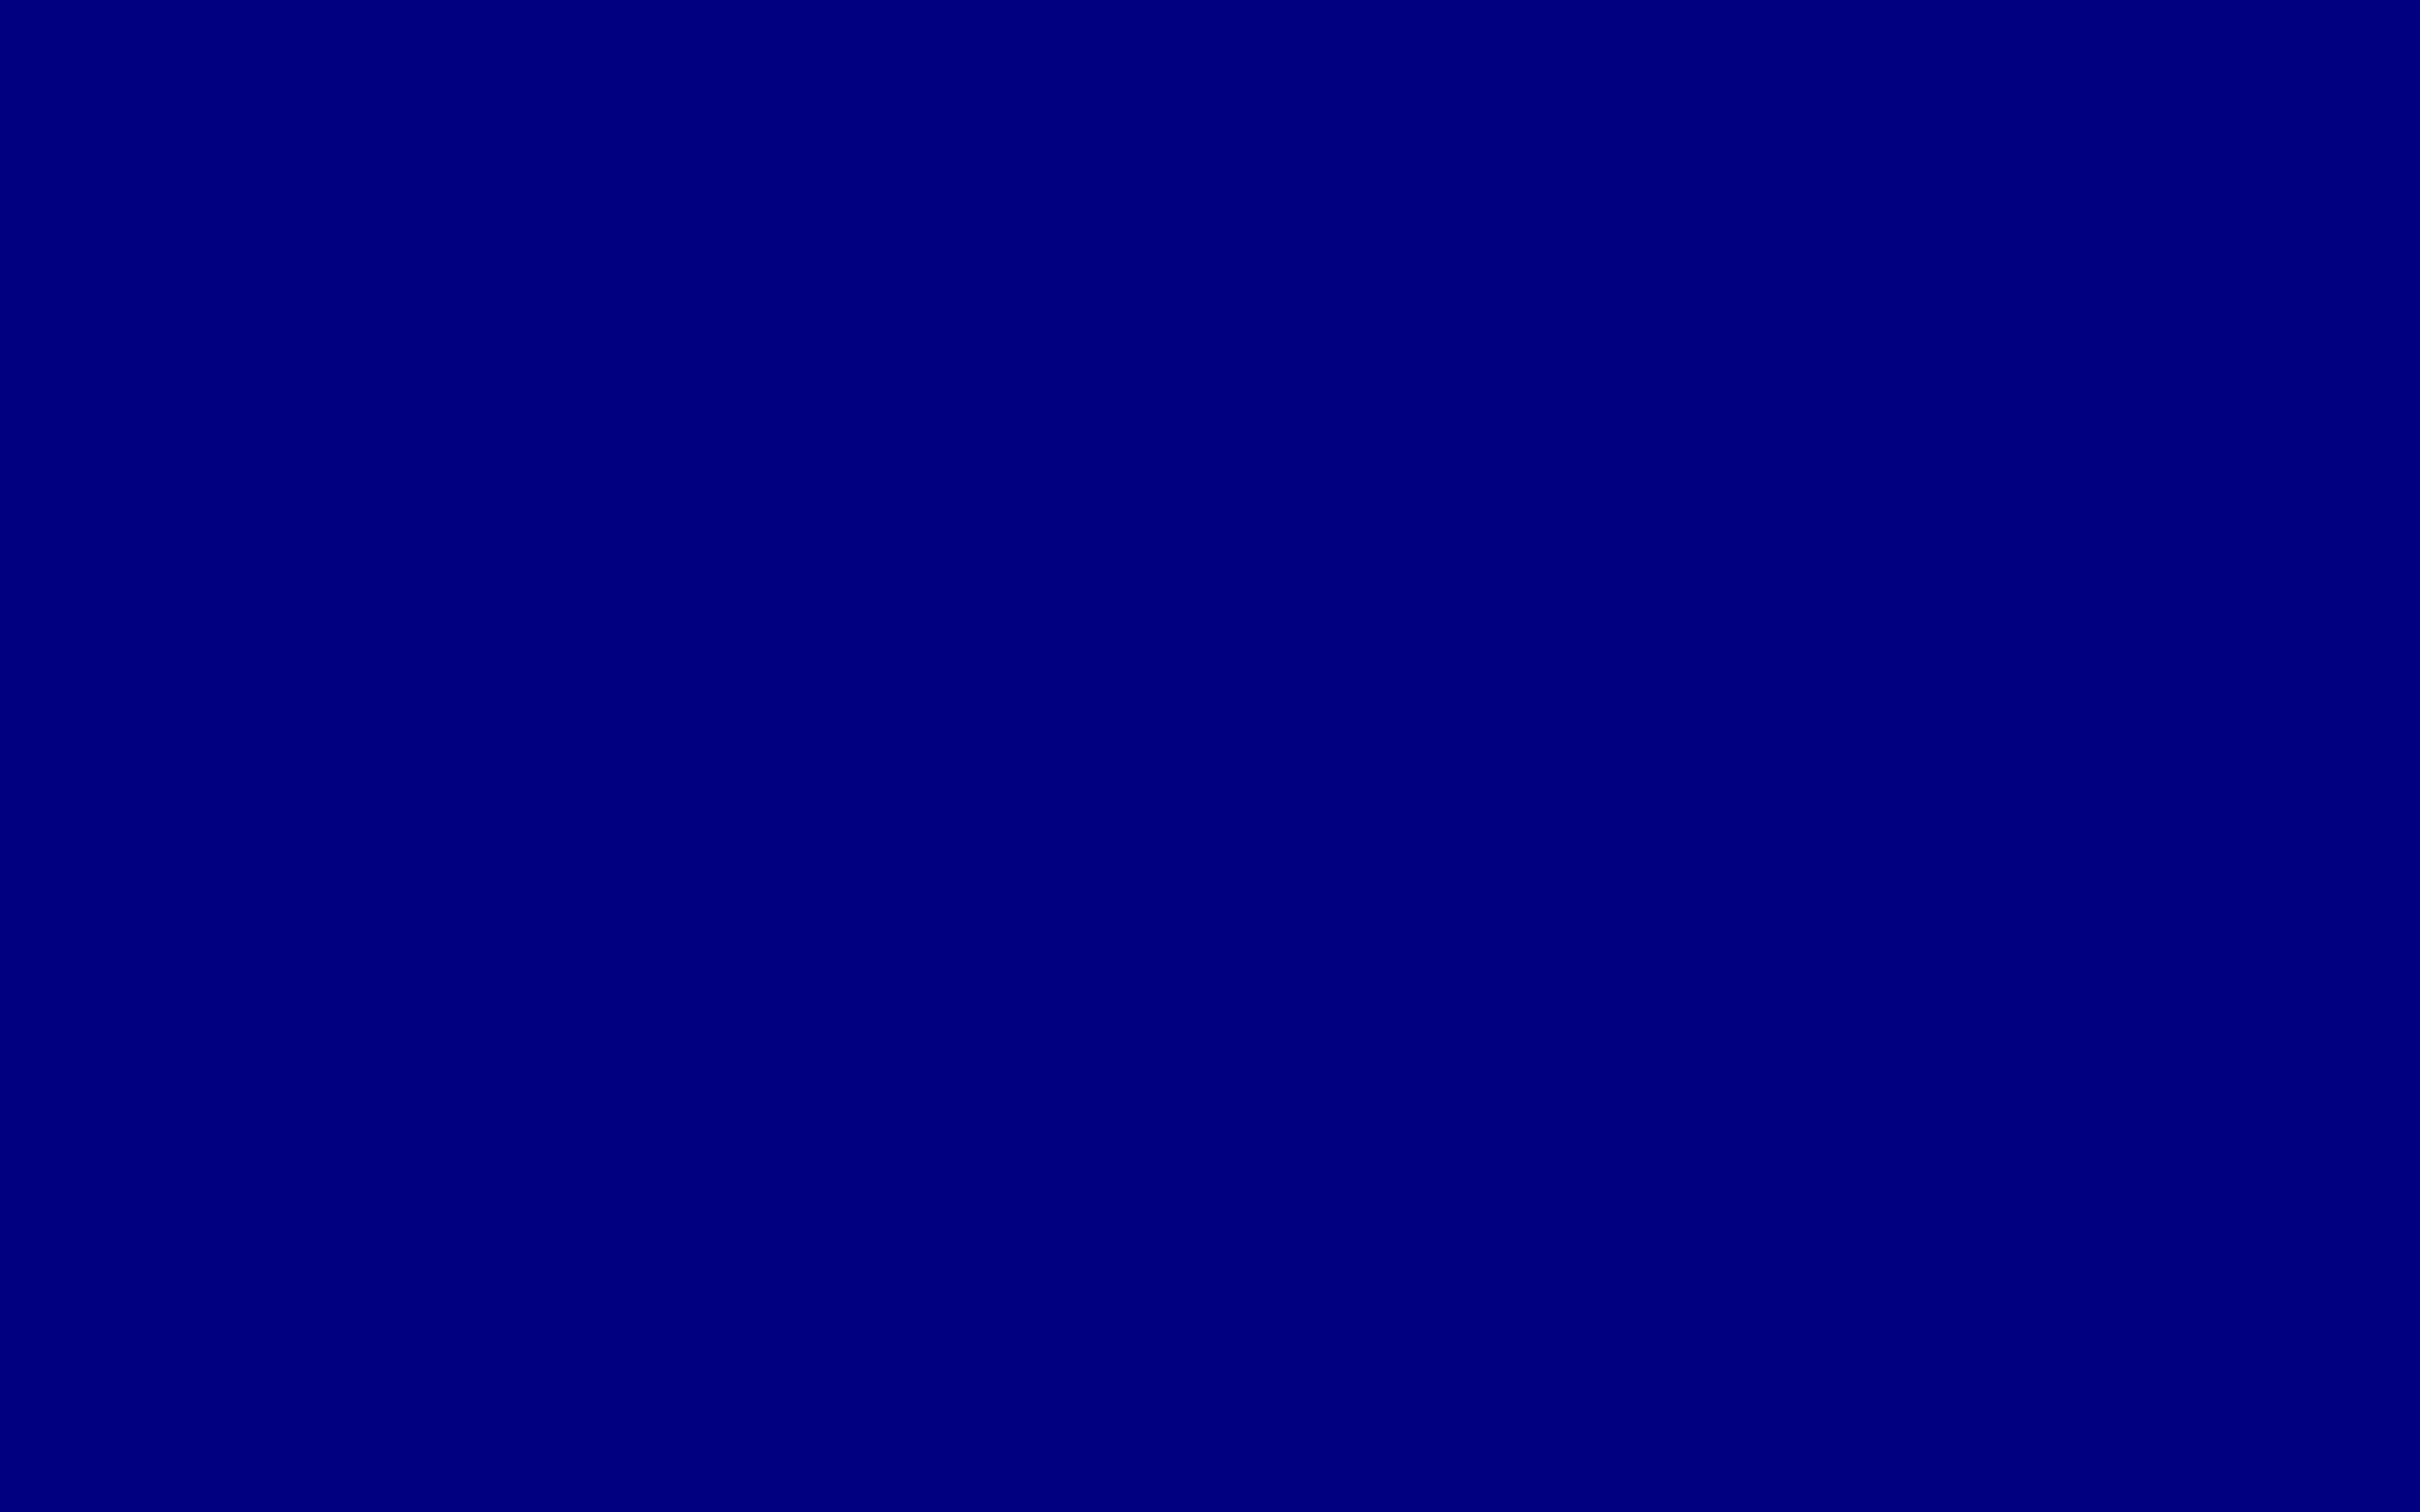 Navy Blue Wallpaper Widescreen HD